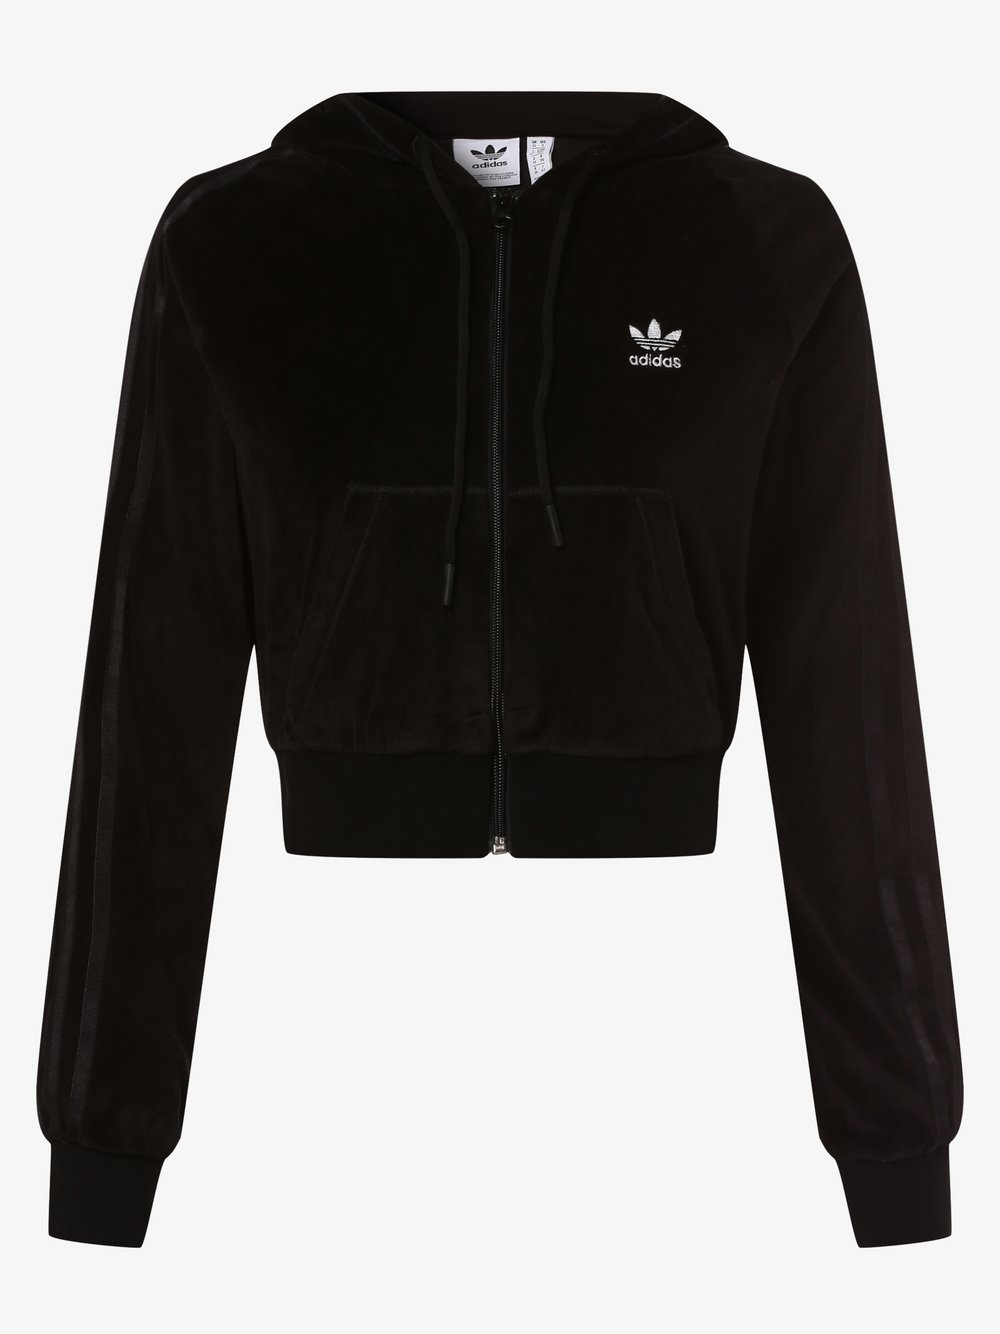 Adidas Originals - Damska kurtka z kapturem, czarny